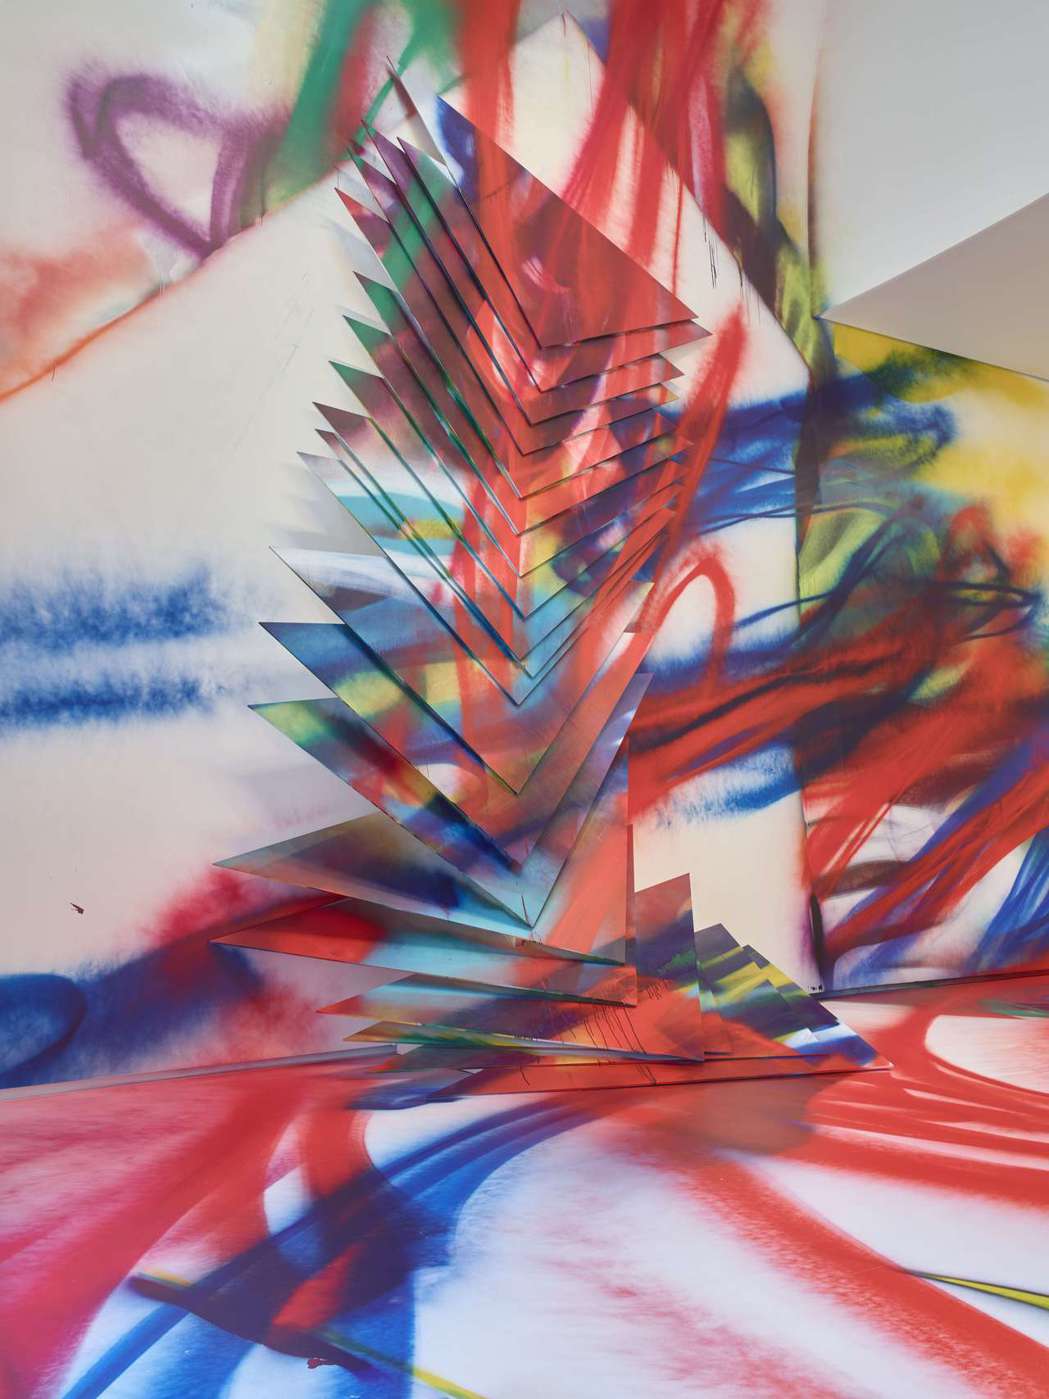 德國藝術家Katharina Grosse為《色彩賦格曲》展覽，所打造的裝置藝術...